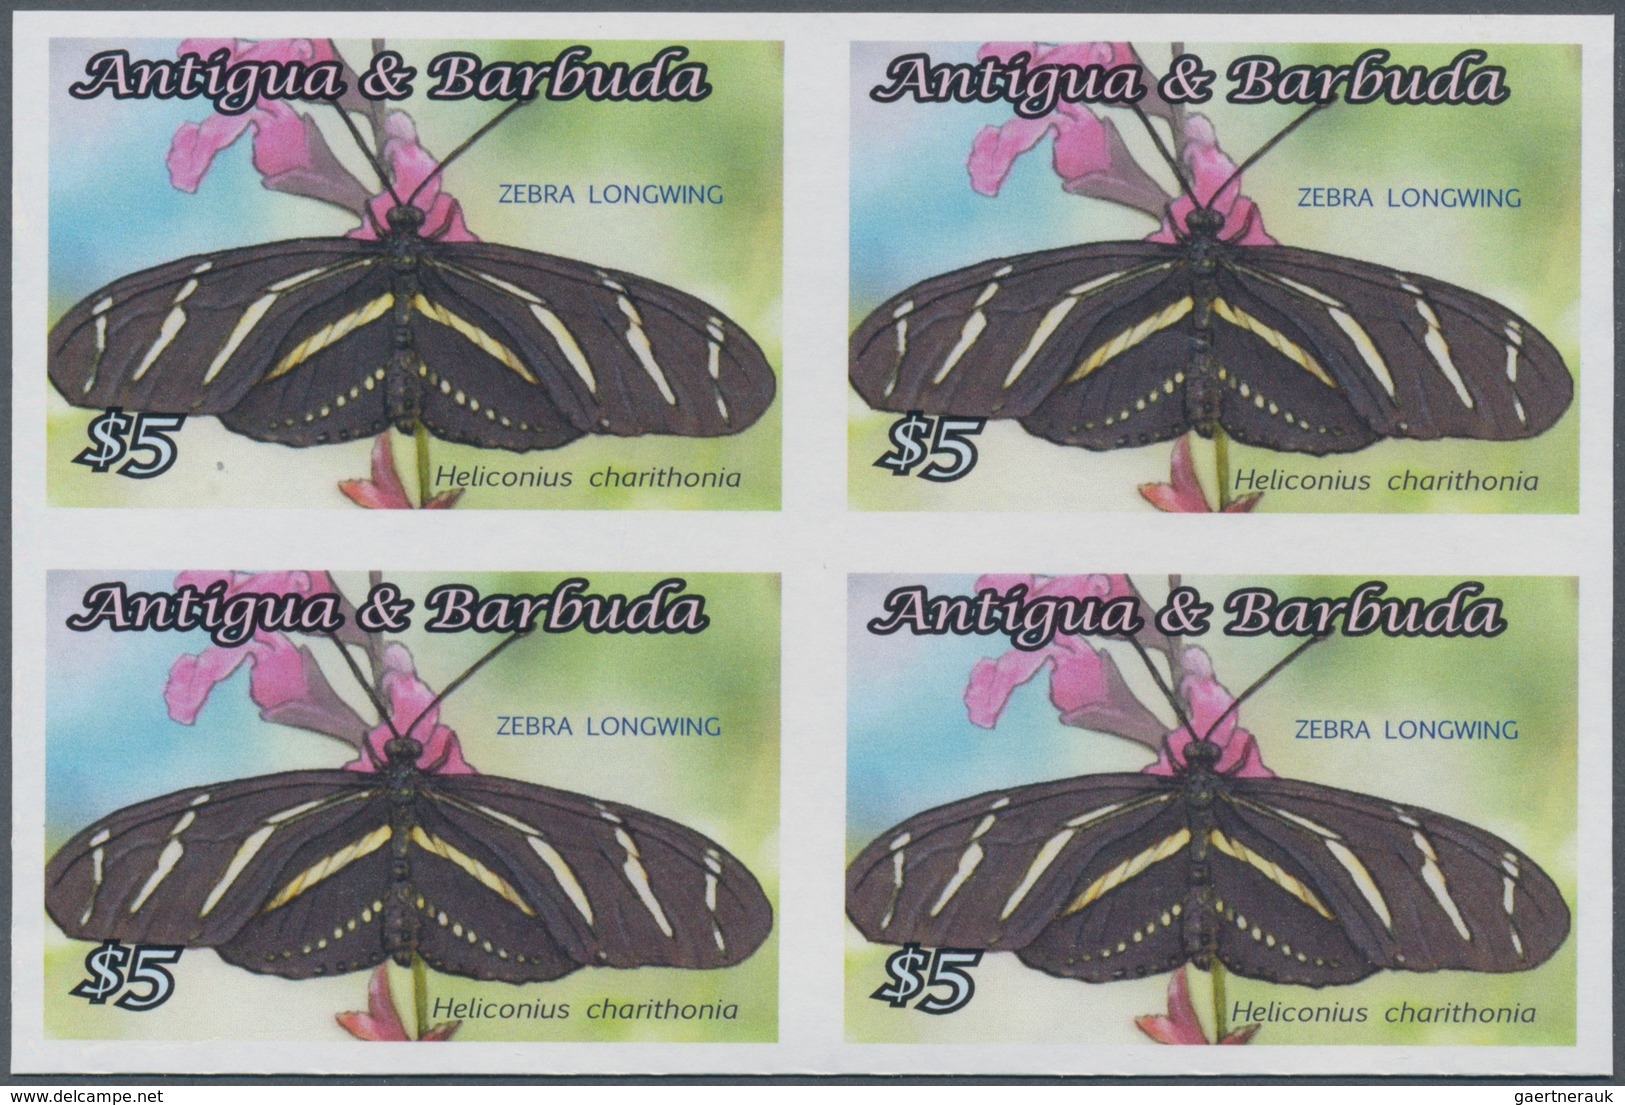 Thematik: Tiere-Schmetterlinge / Animals-butterflies: 2010, Antigua & Barbuda. IMPERFORATE Block Of - Butterflies